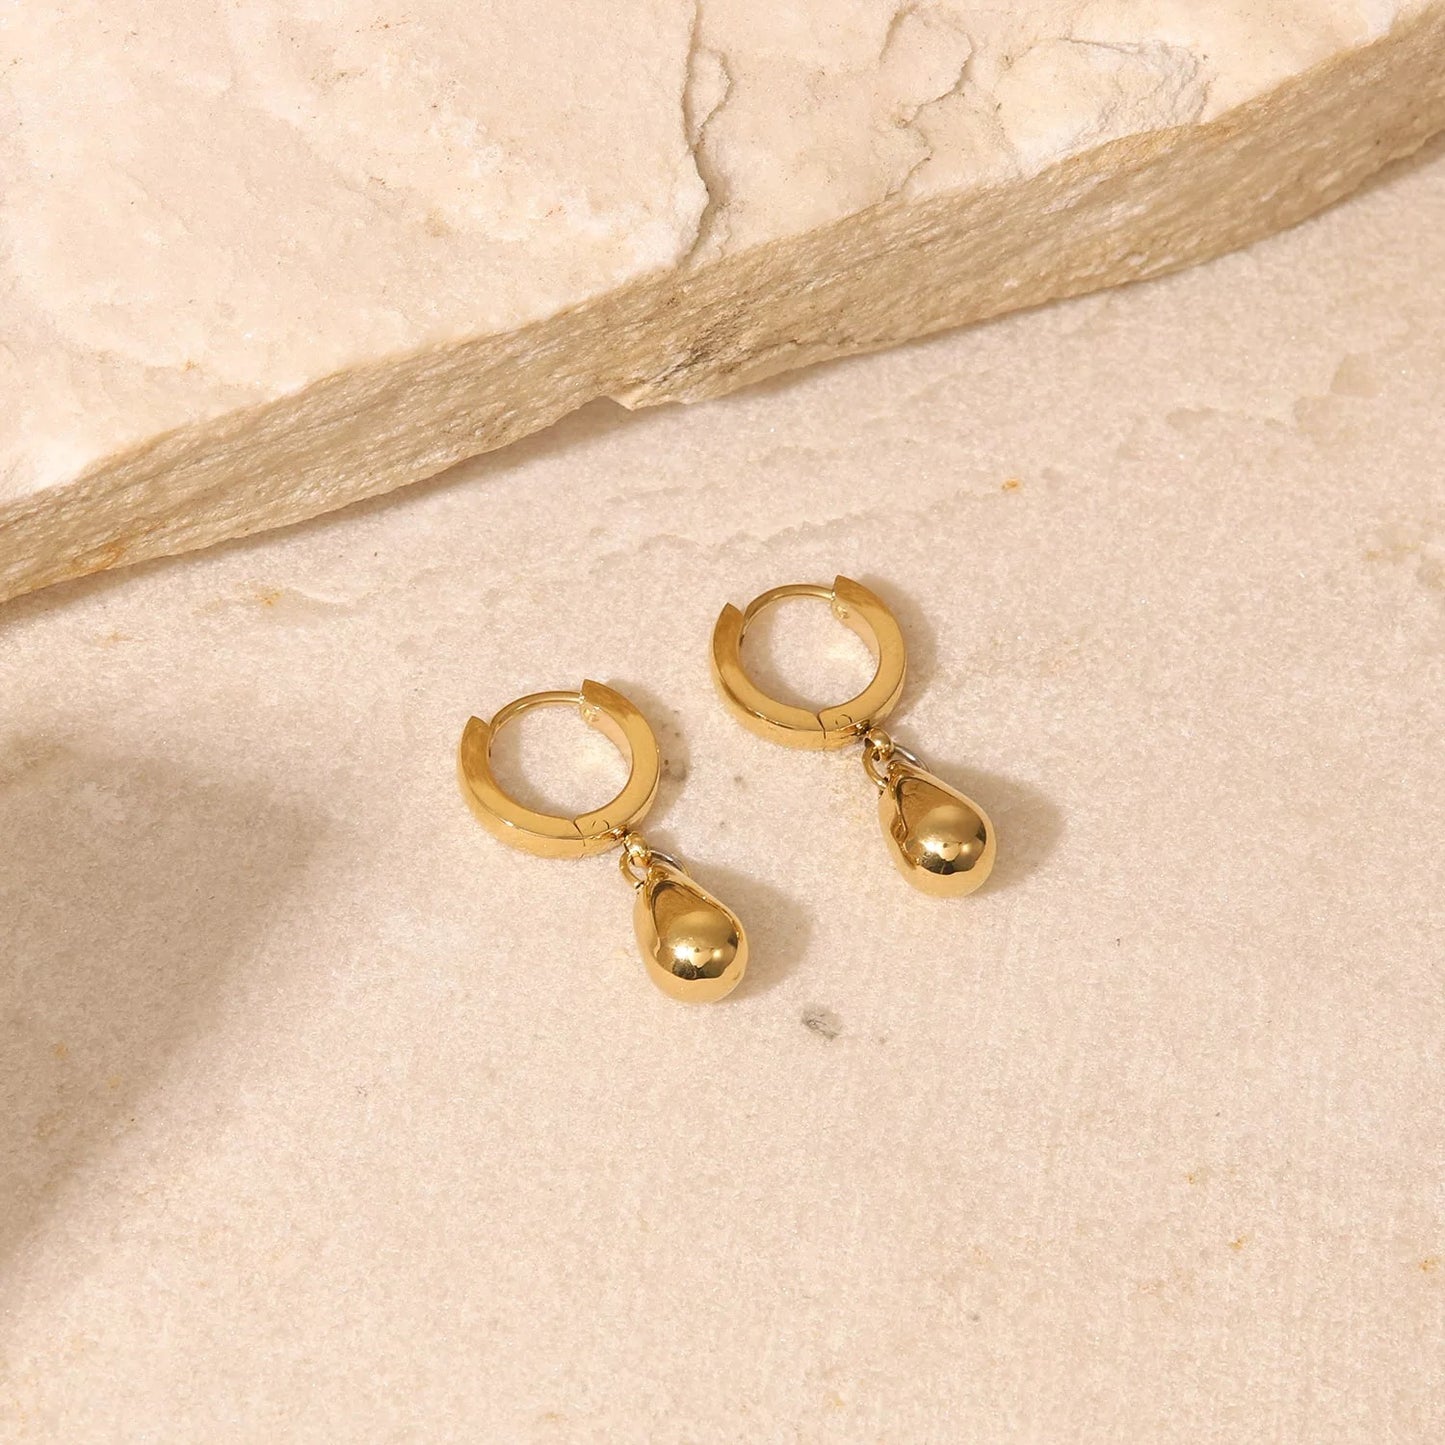 Tear drop 14k gold plated earring